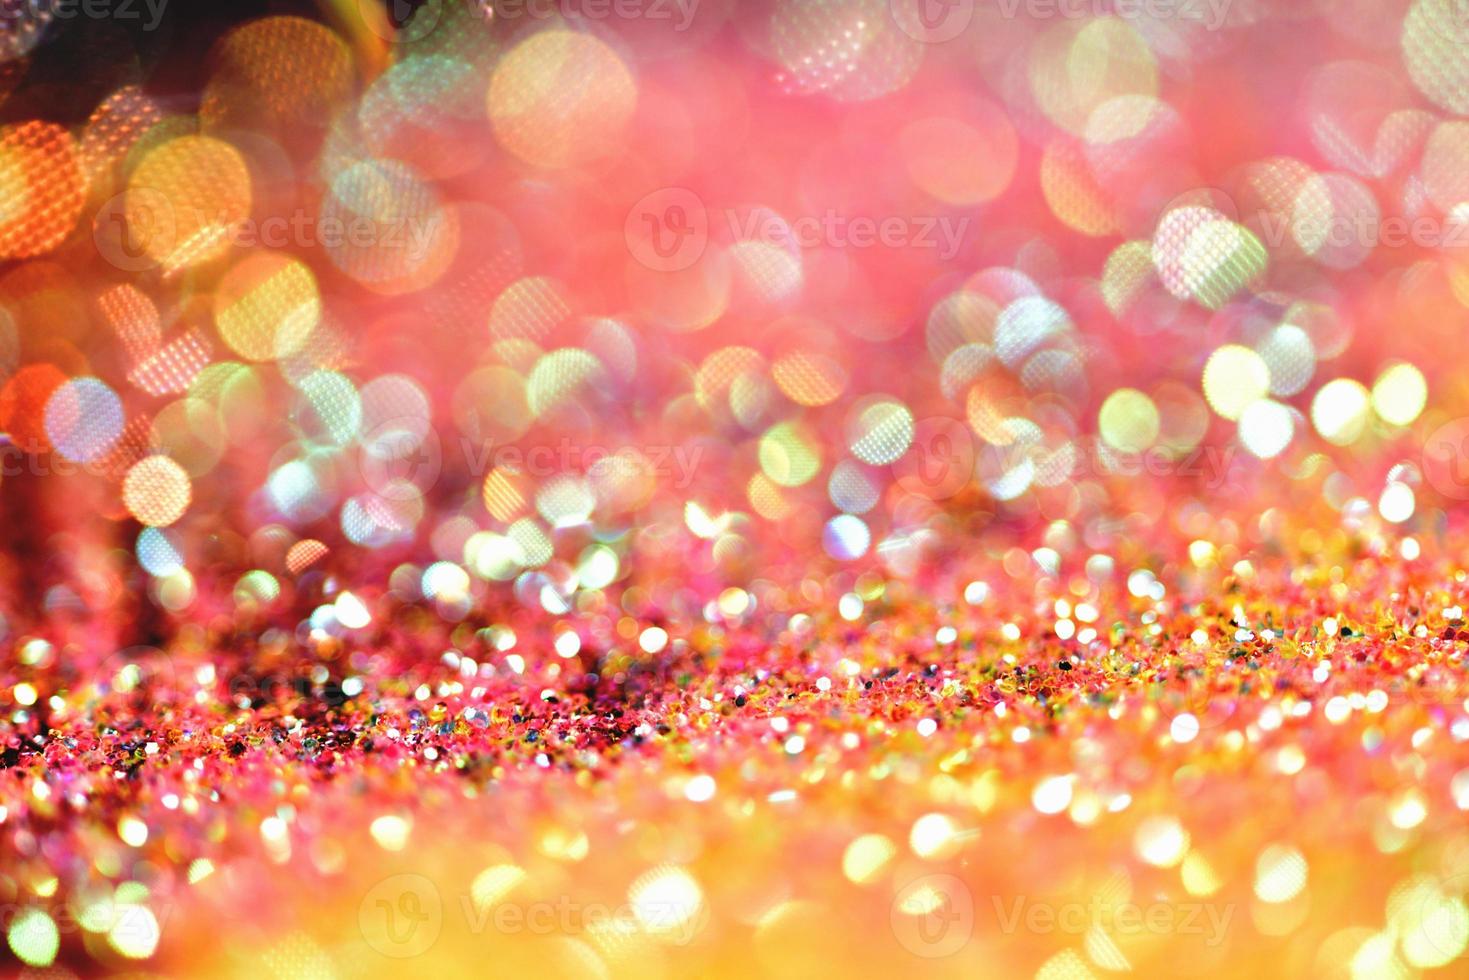 bokeh glitter colorfull fond abstrait flou pour l'anniversaire, l'anniversaire, le mariage, le réveillon du nouvel an ou noël photo